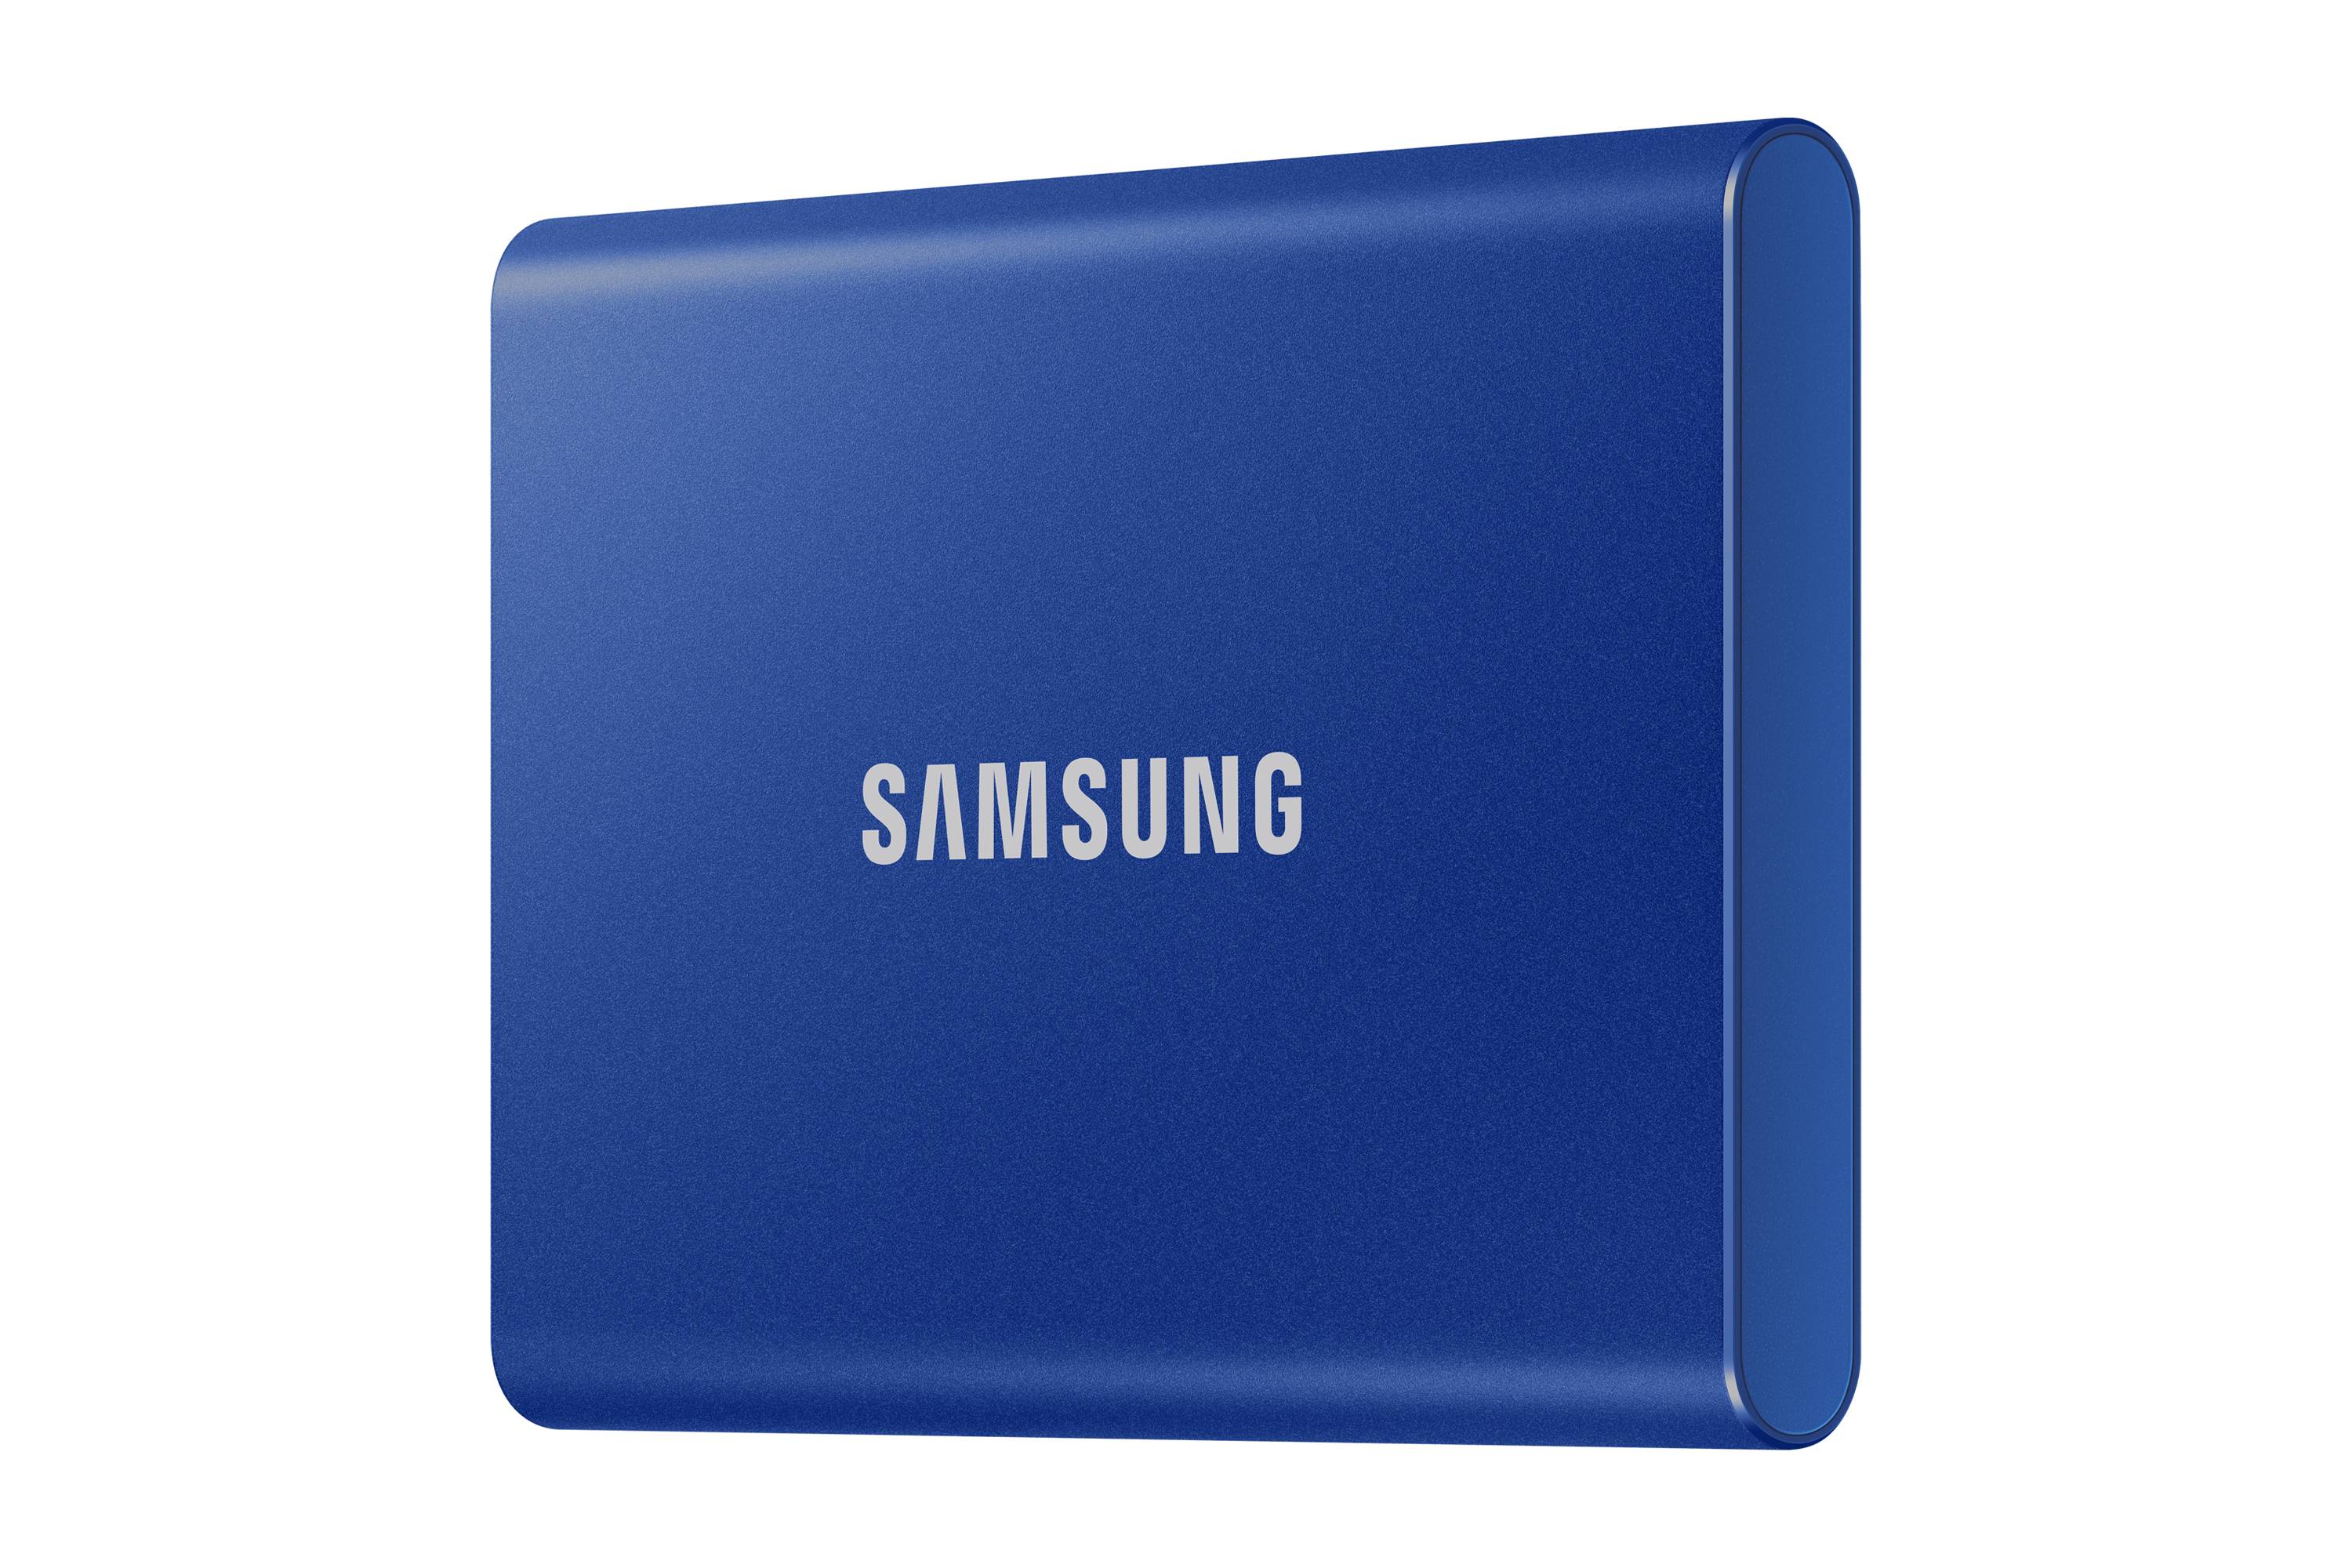 Rca Informatique - image du produit : SSD PORTABLE T7 1TB USB 3.2 INDIGO BLUE